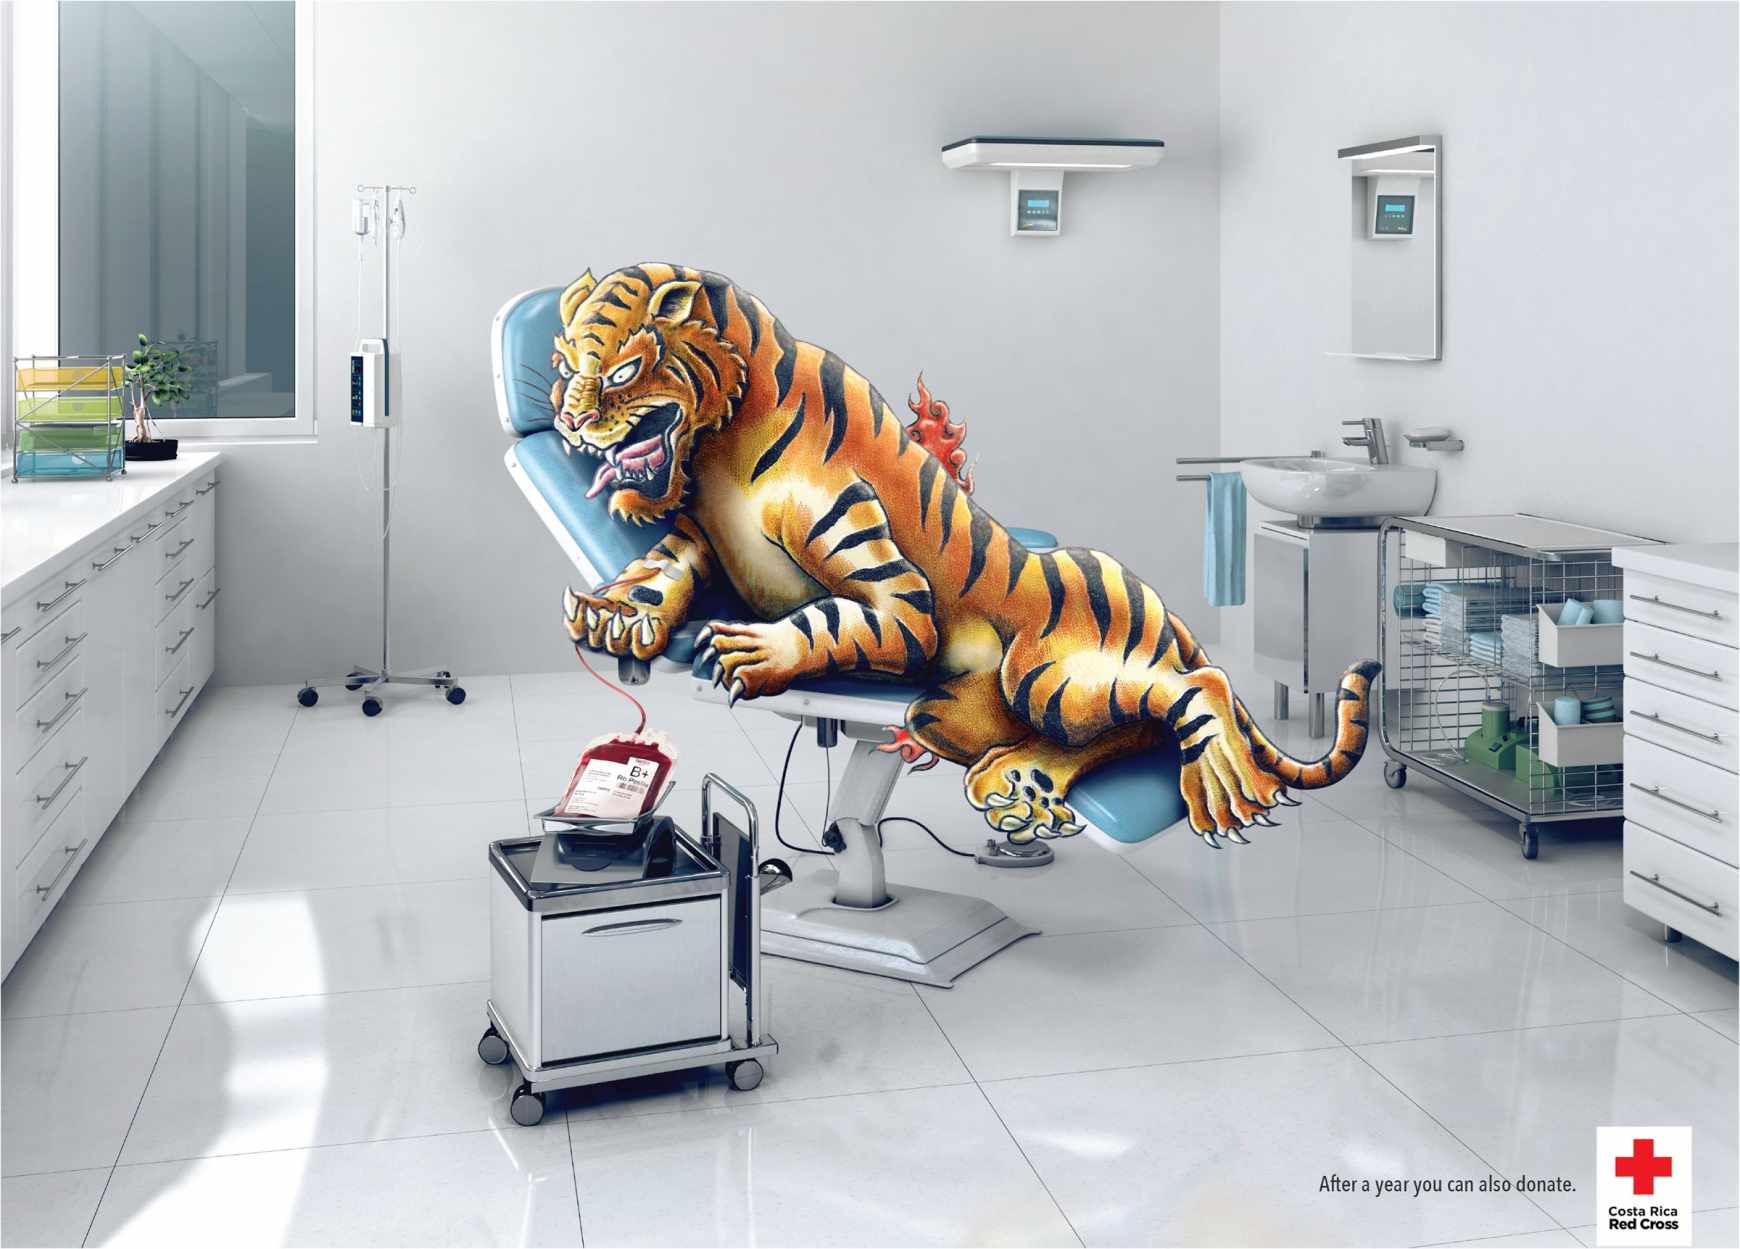 上海广告设计公司——国际红十字会献血公益广告设计欣赏-老虎篇